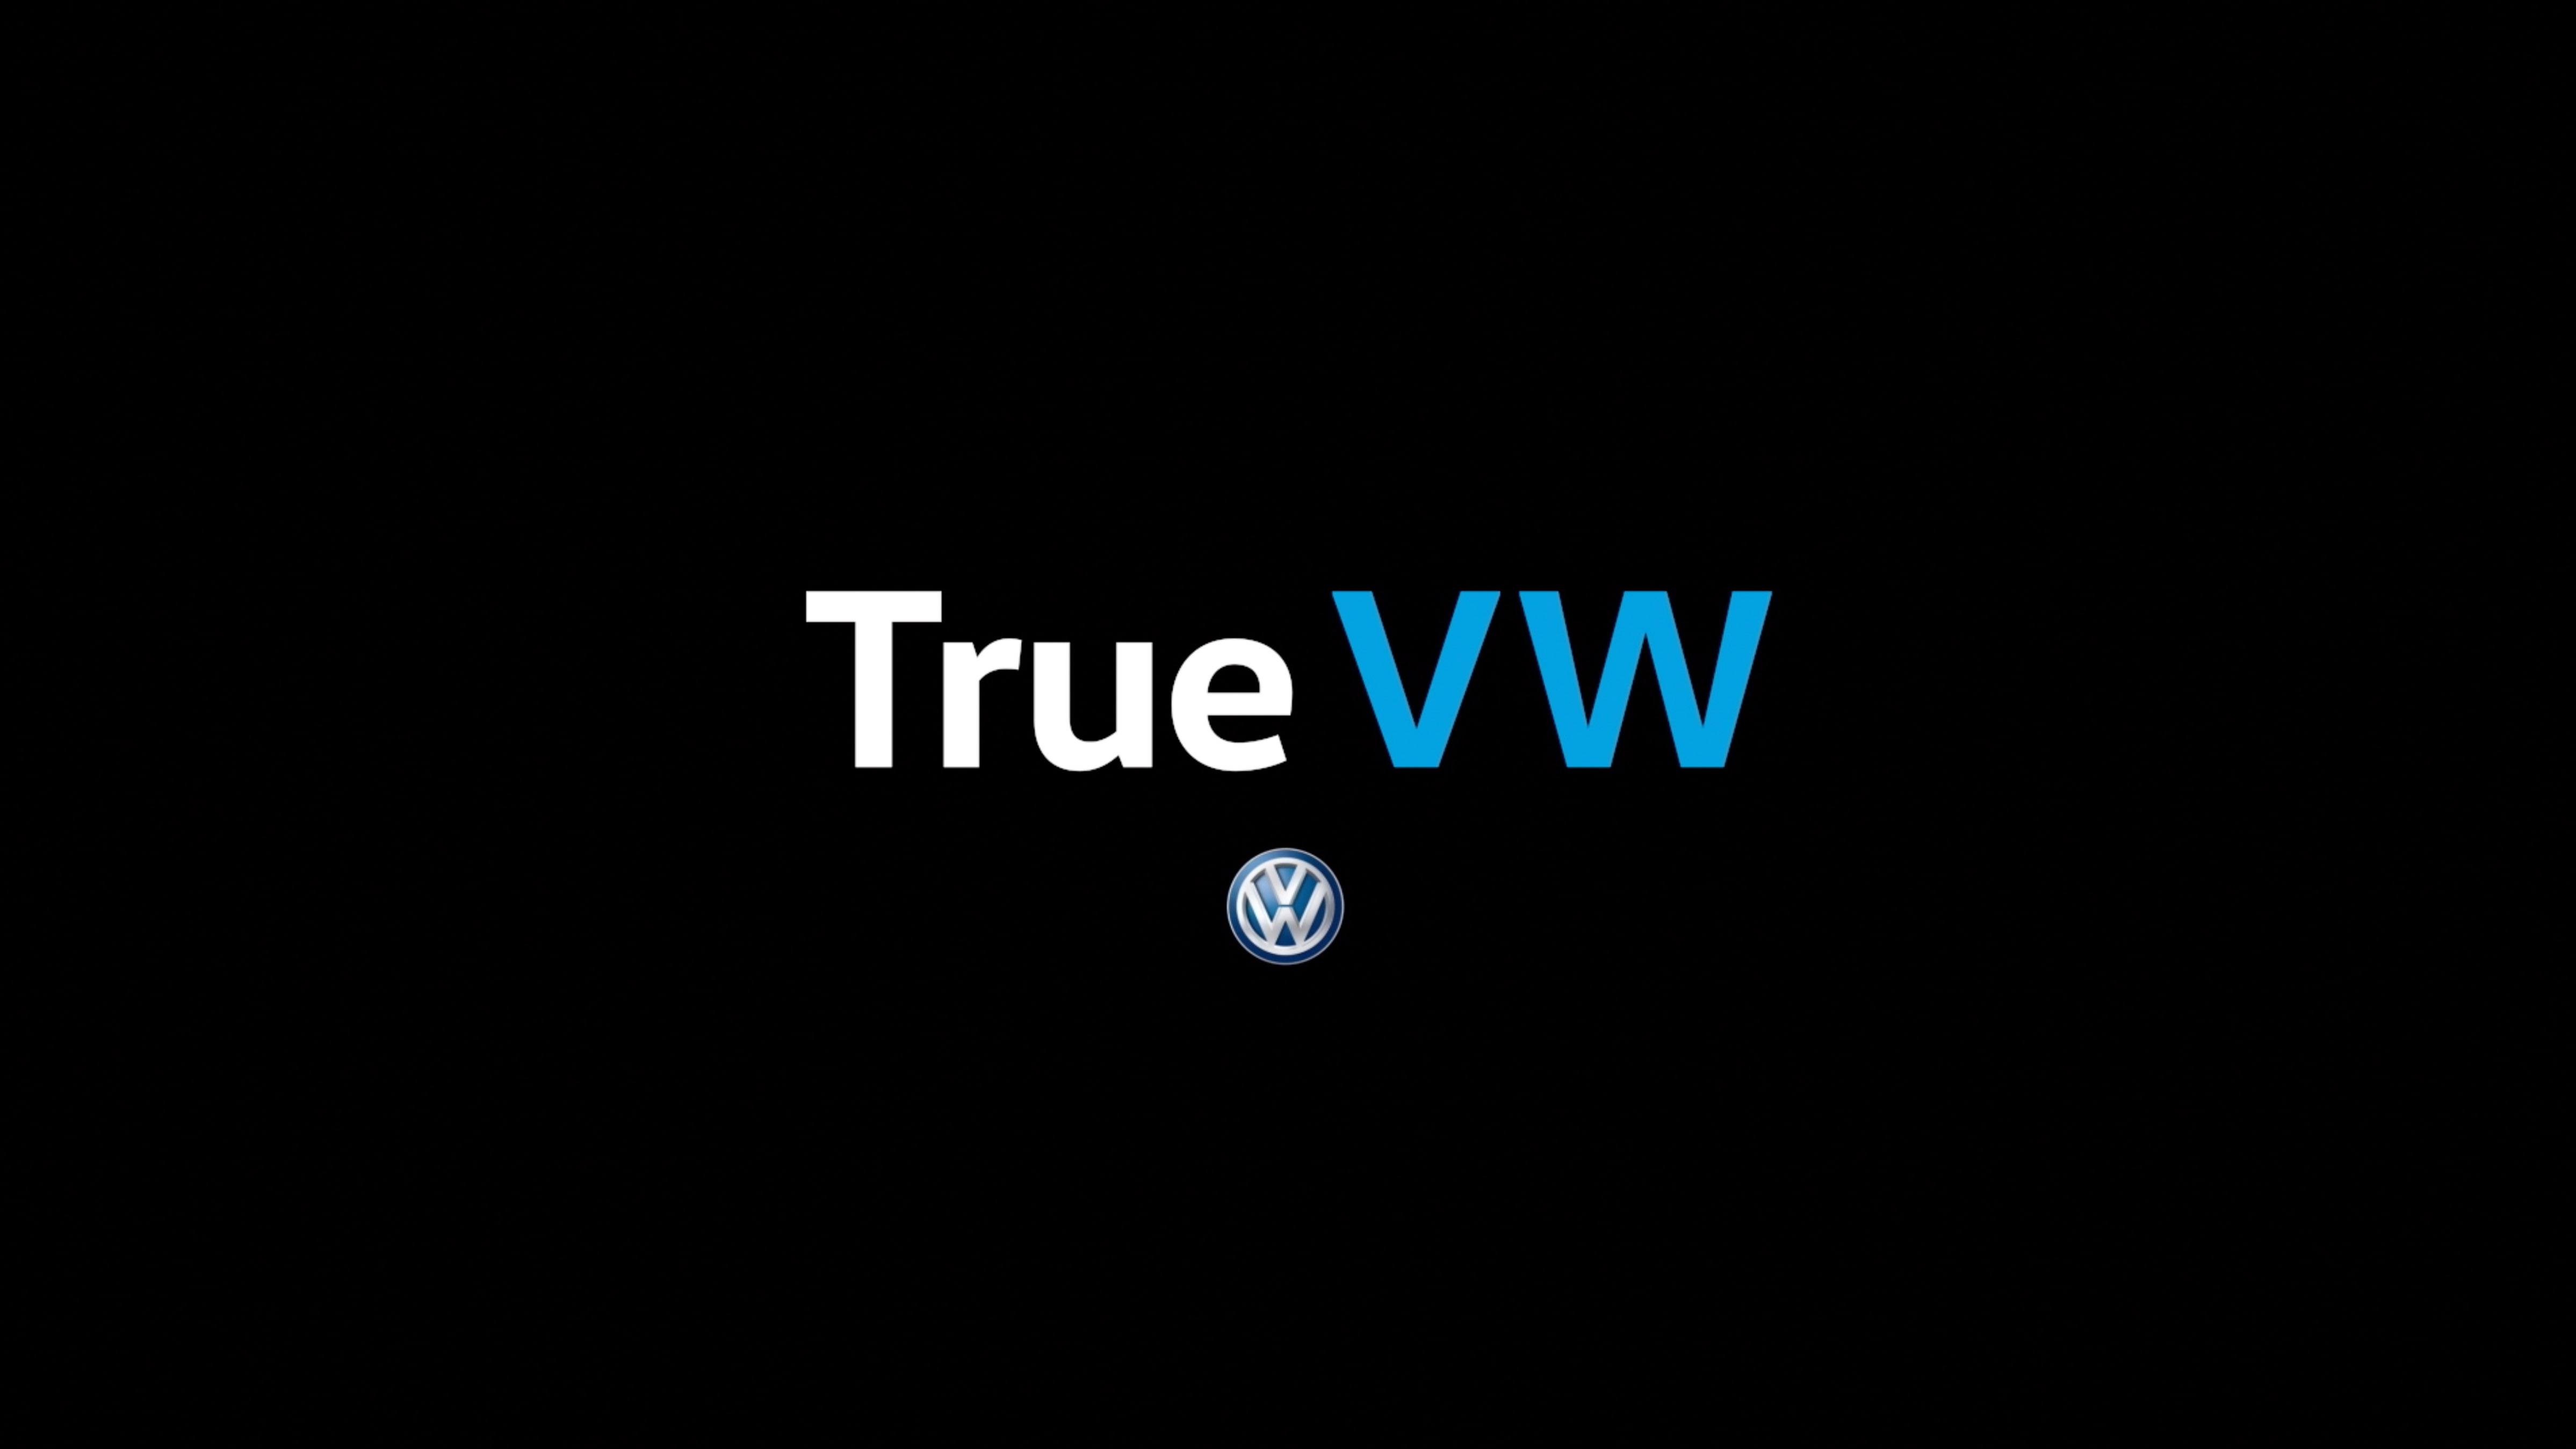 True VW